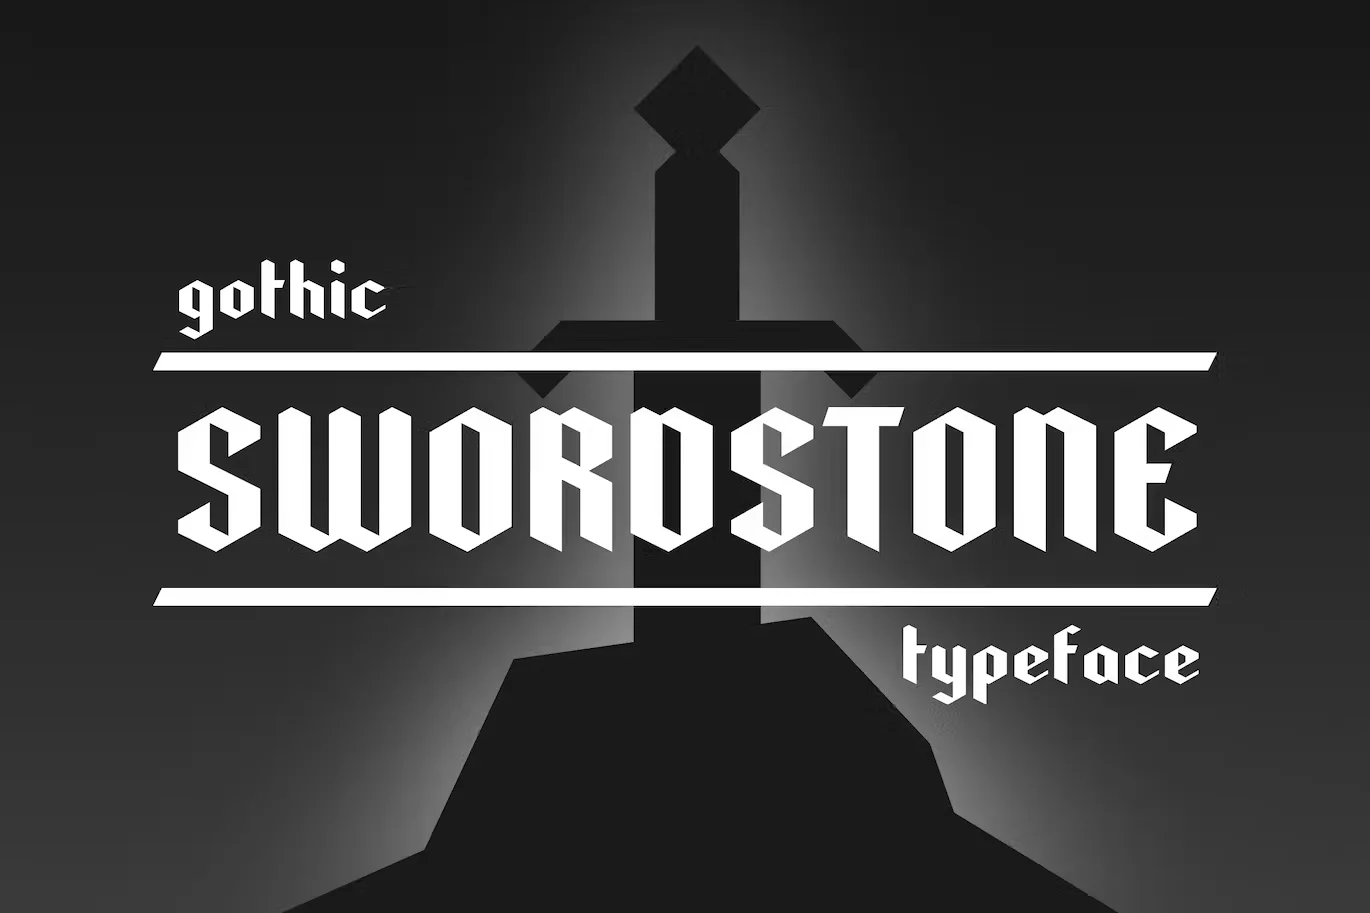 Swordstone - Gothic Typeface